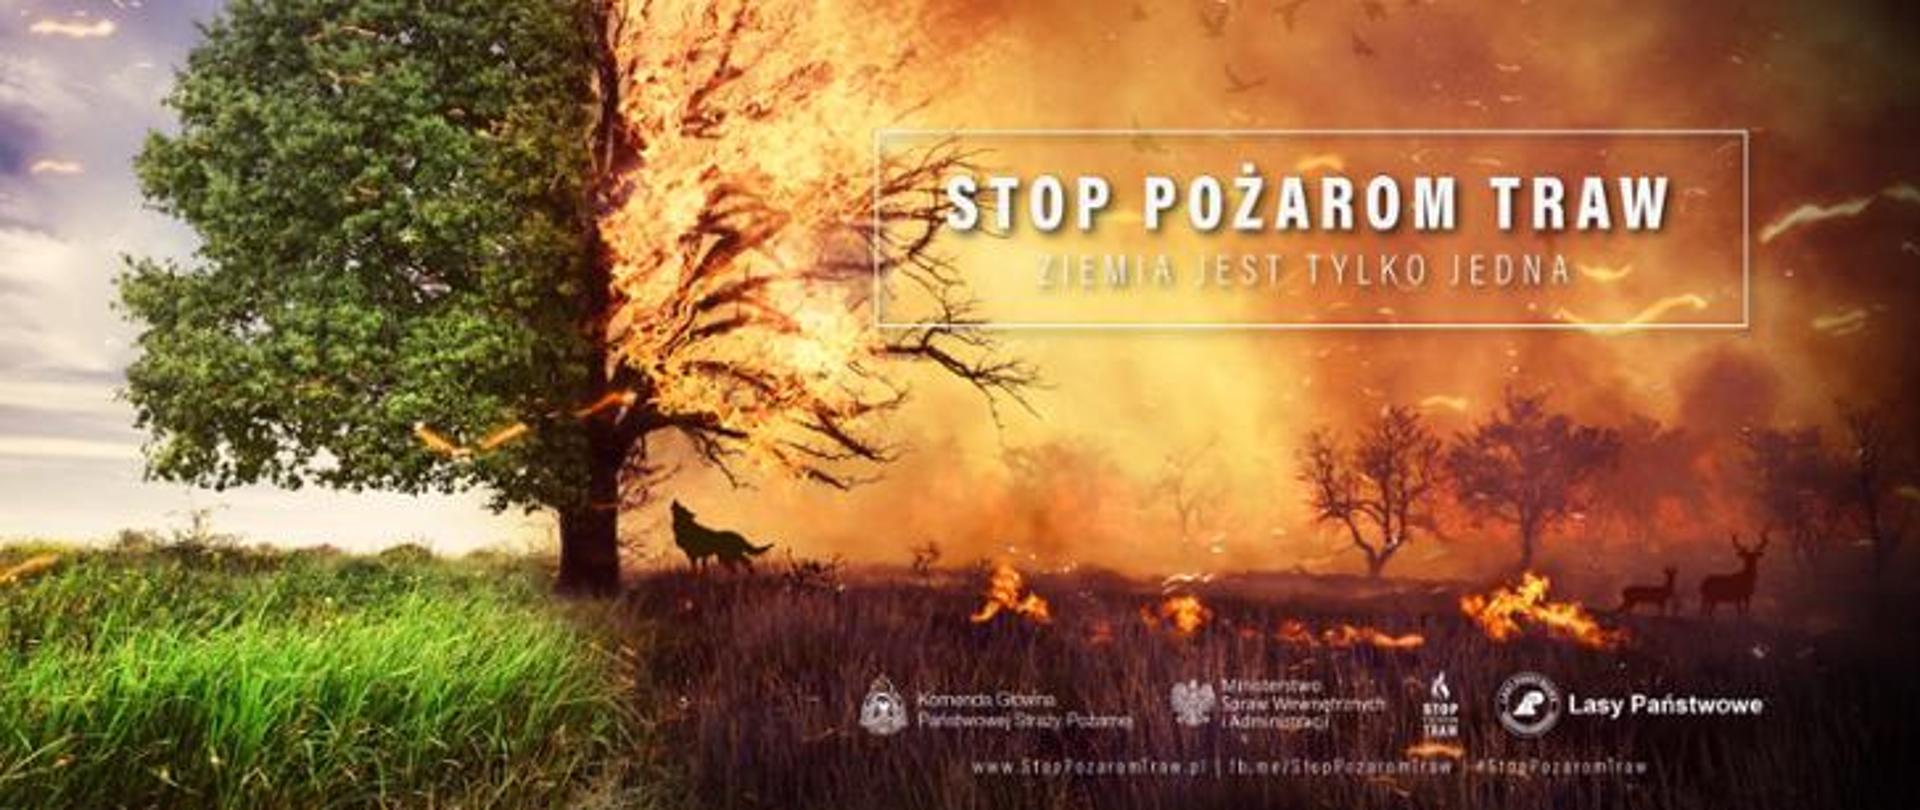 Plakat akcji Stop pożarom traw. Ziemia jest tylko jedna. Na zdjęciu na wpół płonące drzewo oraz zwierzyna leśna w czasie pożaru.